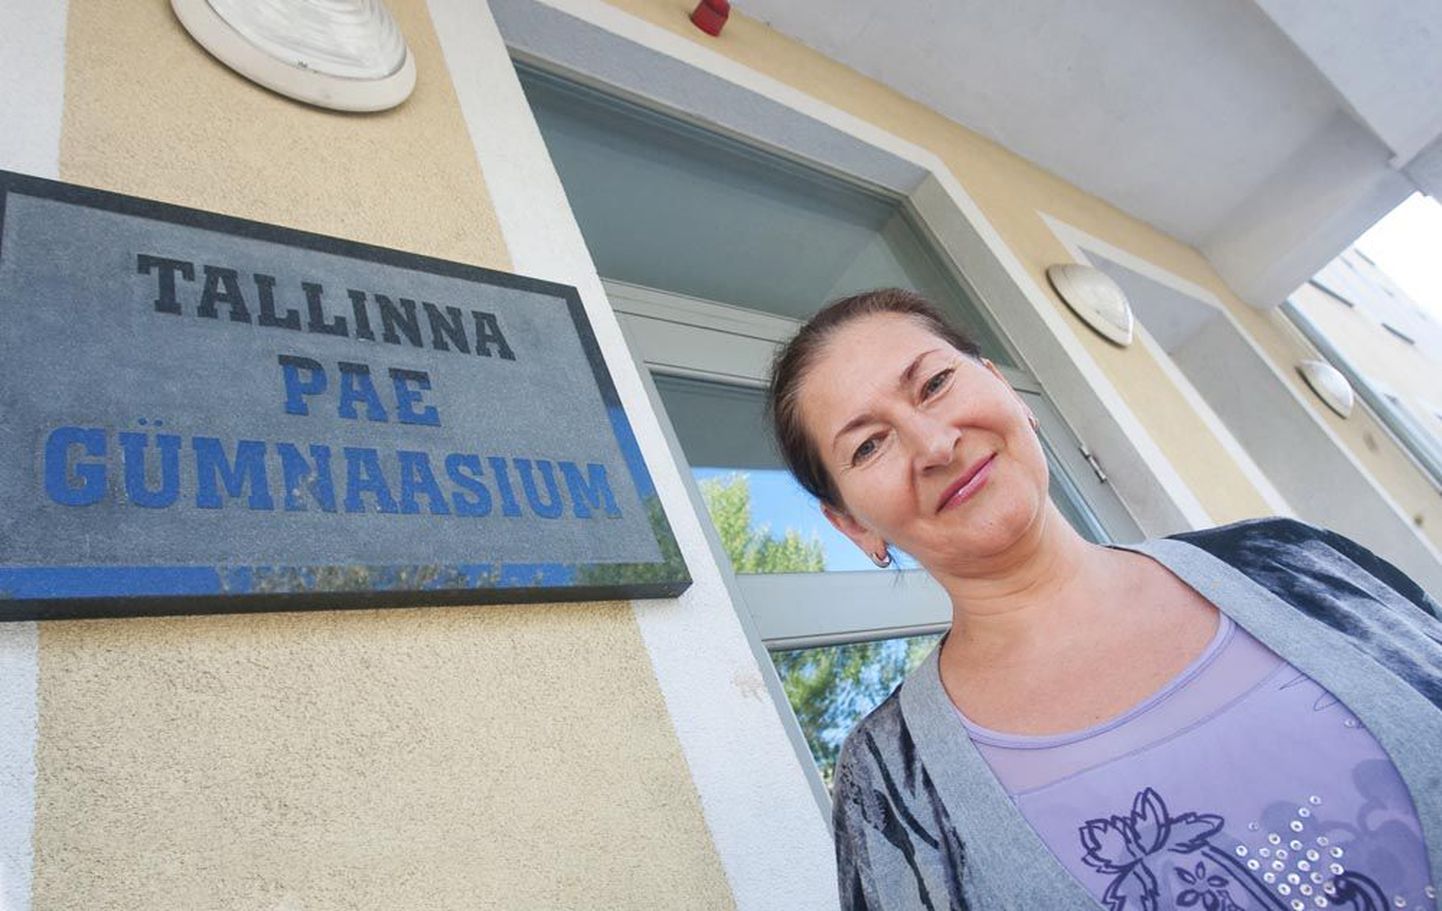 Ühe edukaima vene kooli, Tallinna Pae gümnaasiumi direktori Isabella Riitsaare arvates on riigieksamite tulemuste paranemise põhjuseks nende koolis keelekümblus. «Asi on
kindlasti selles, et tänavu lõpetasid kooli keelekümblusõpilased,» sõnas ta.